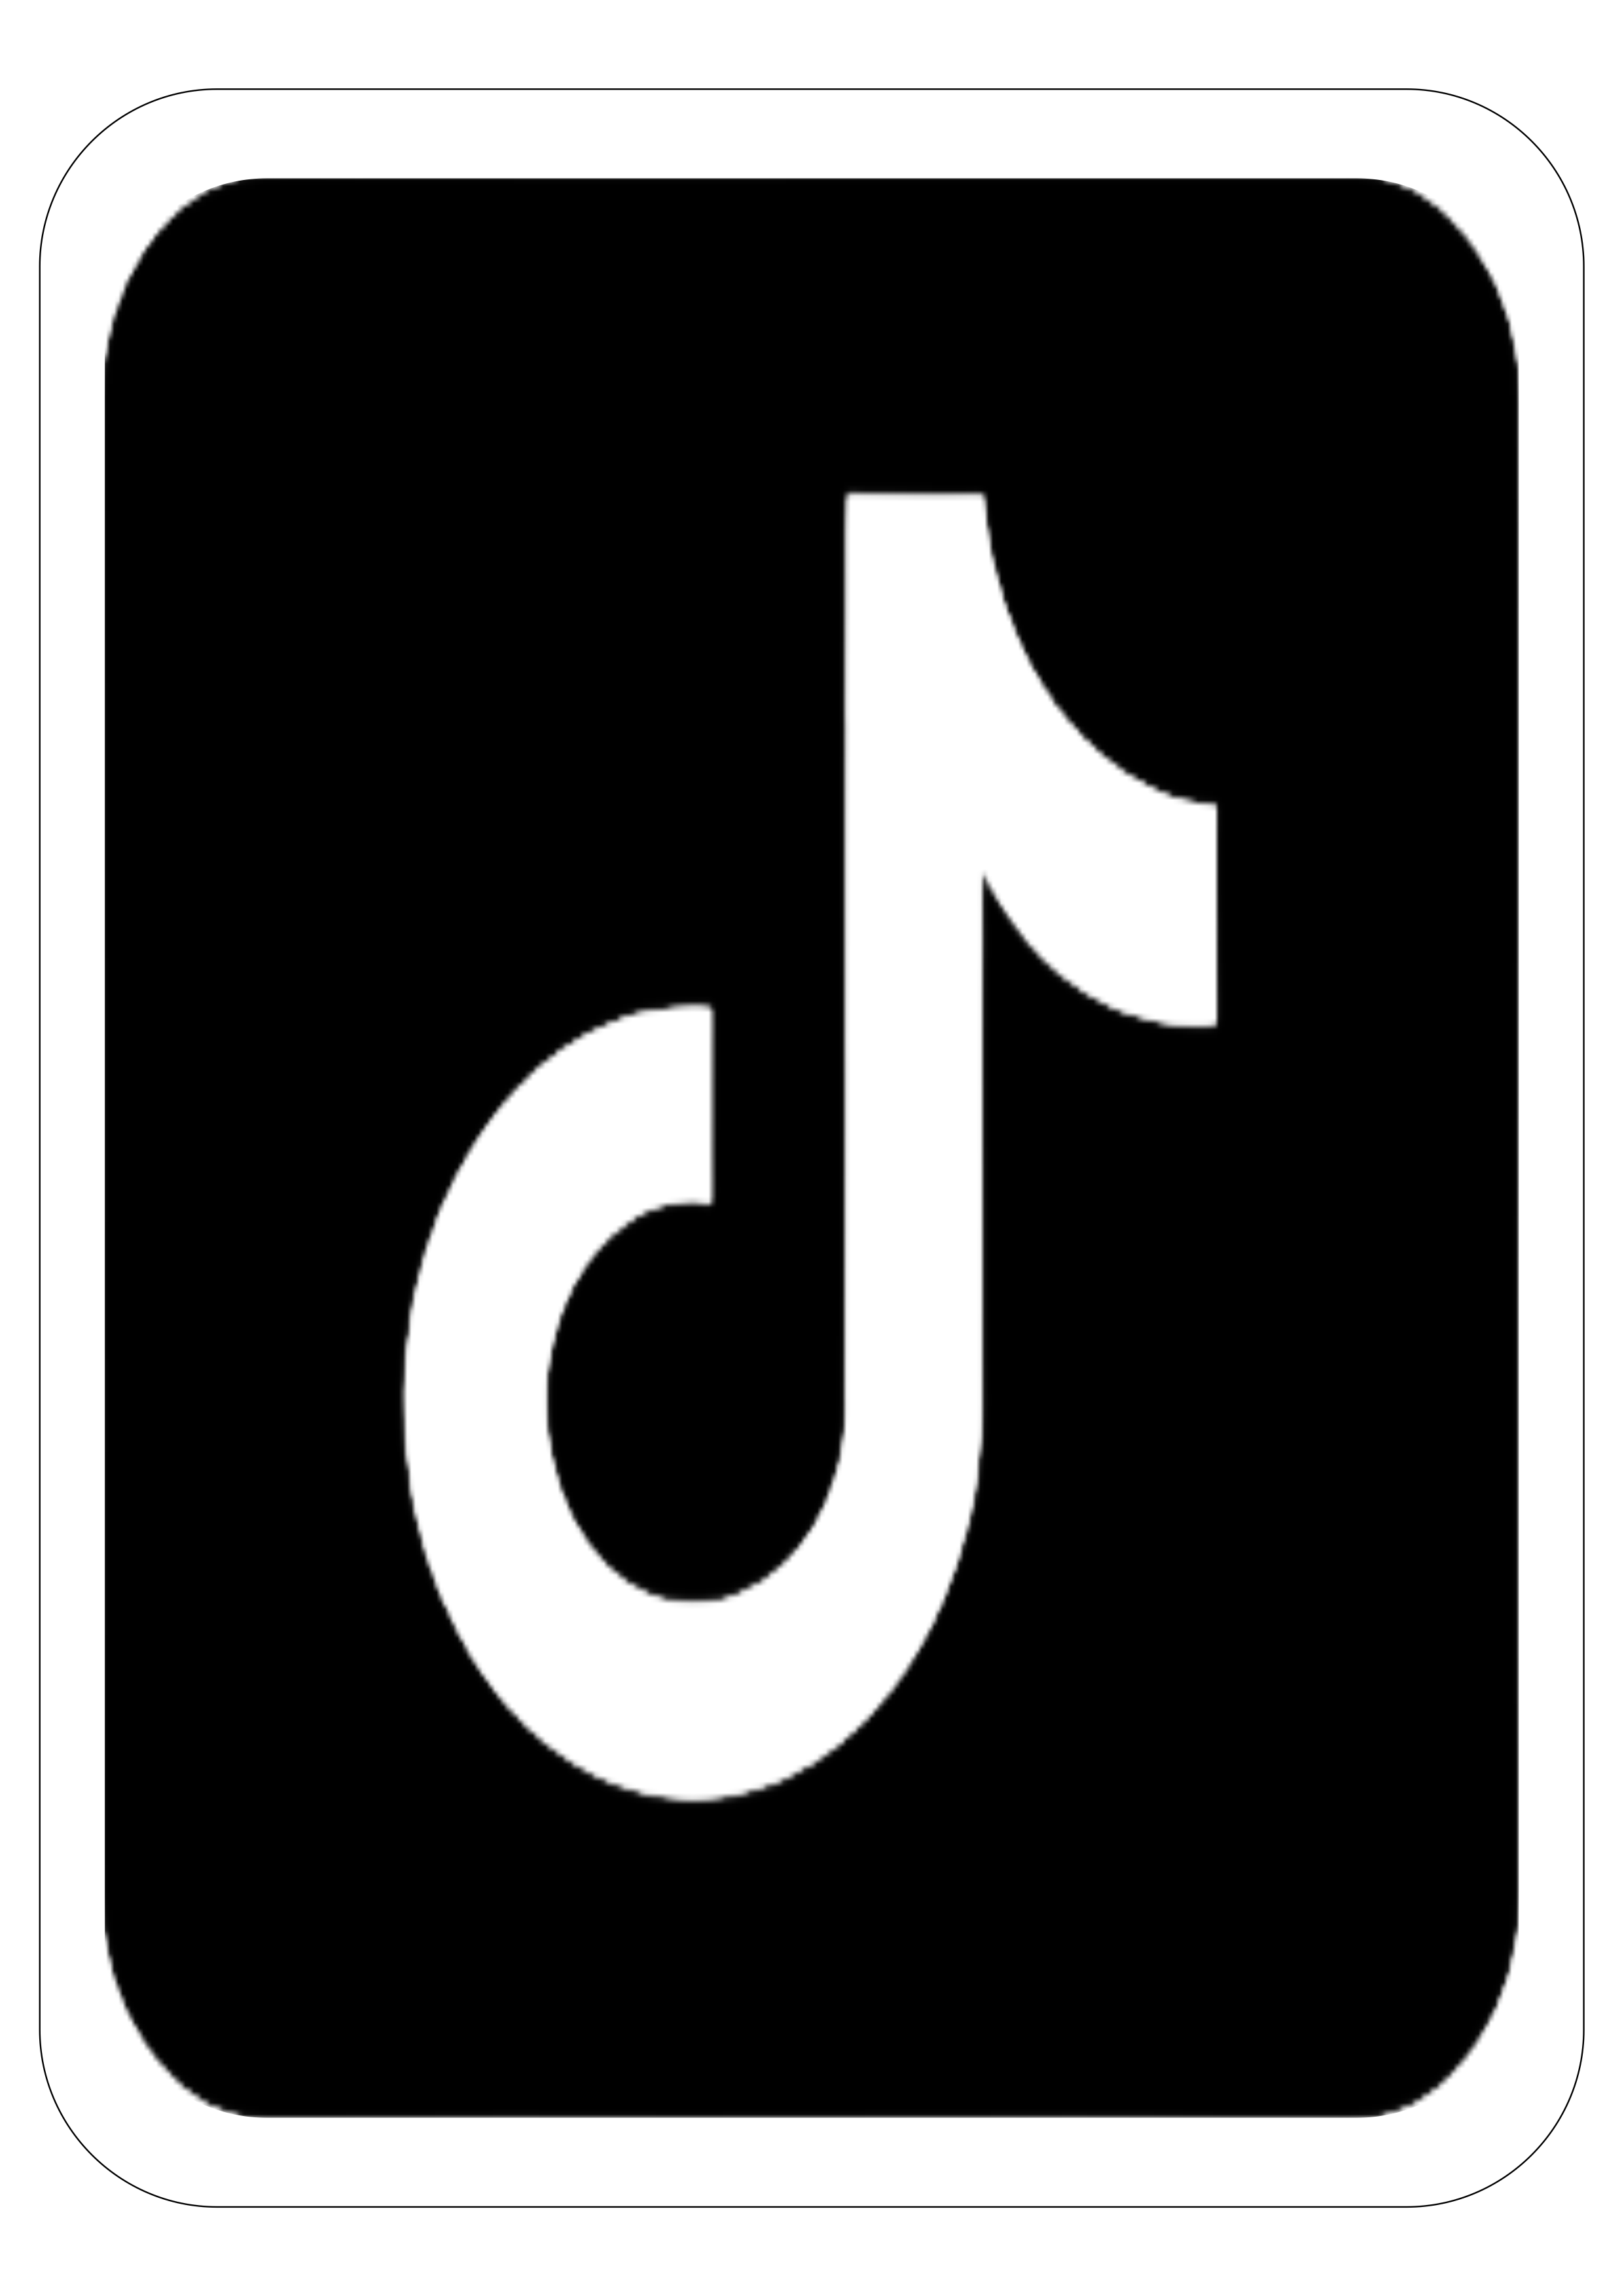 Tiktok simbolo logo aplicativo recorte contorno painel png